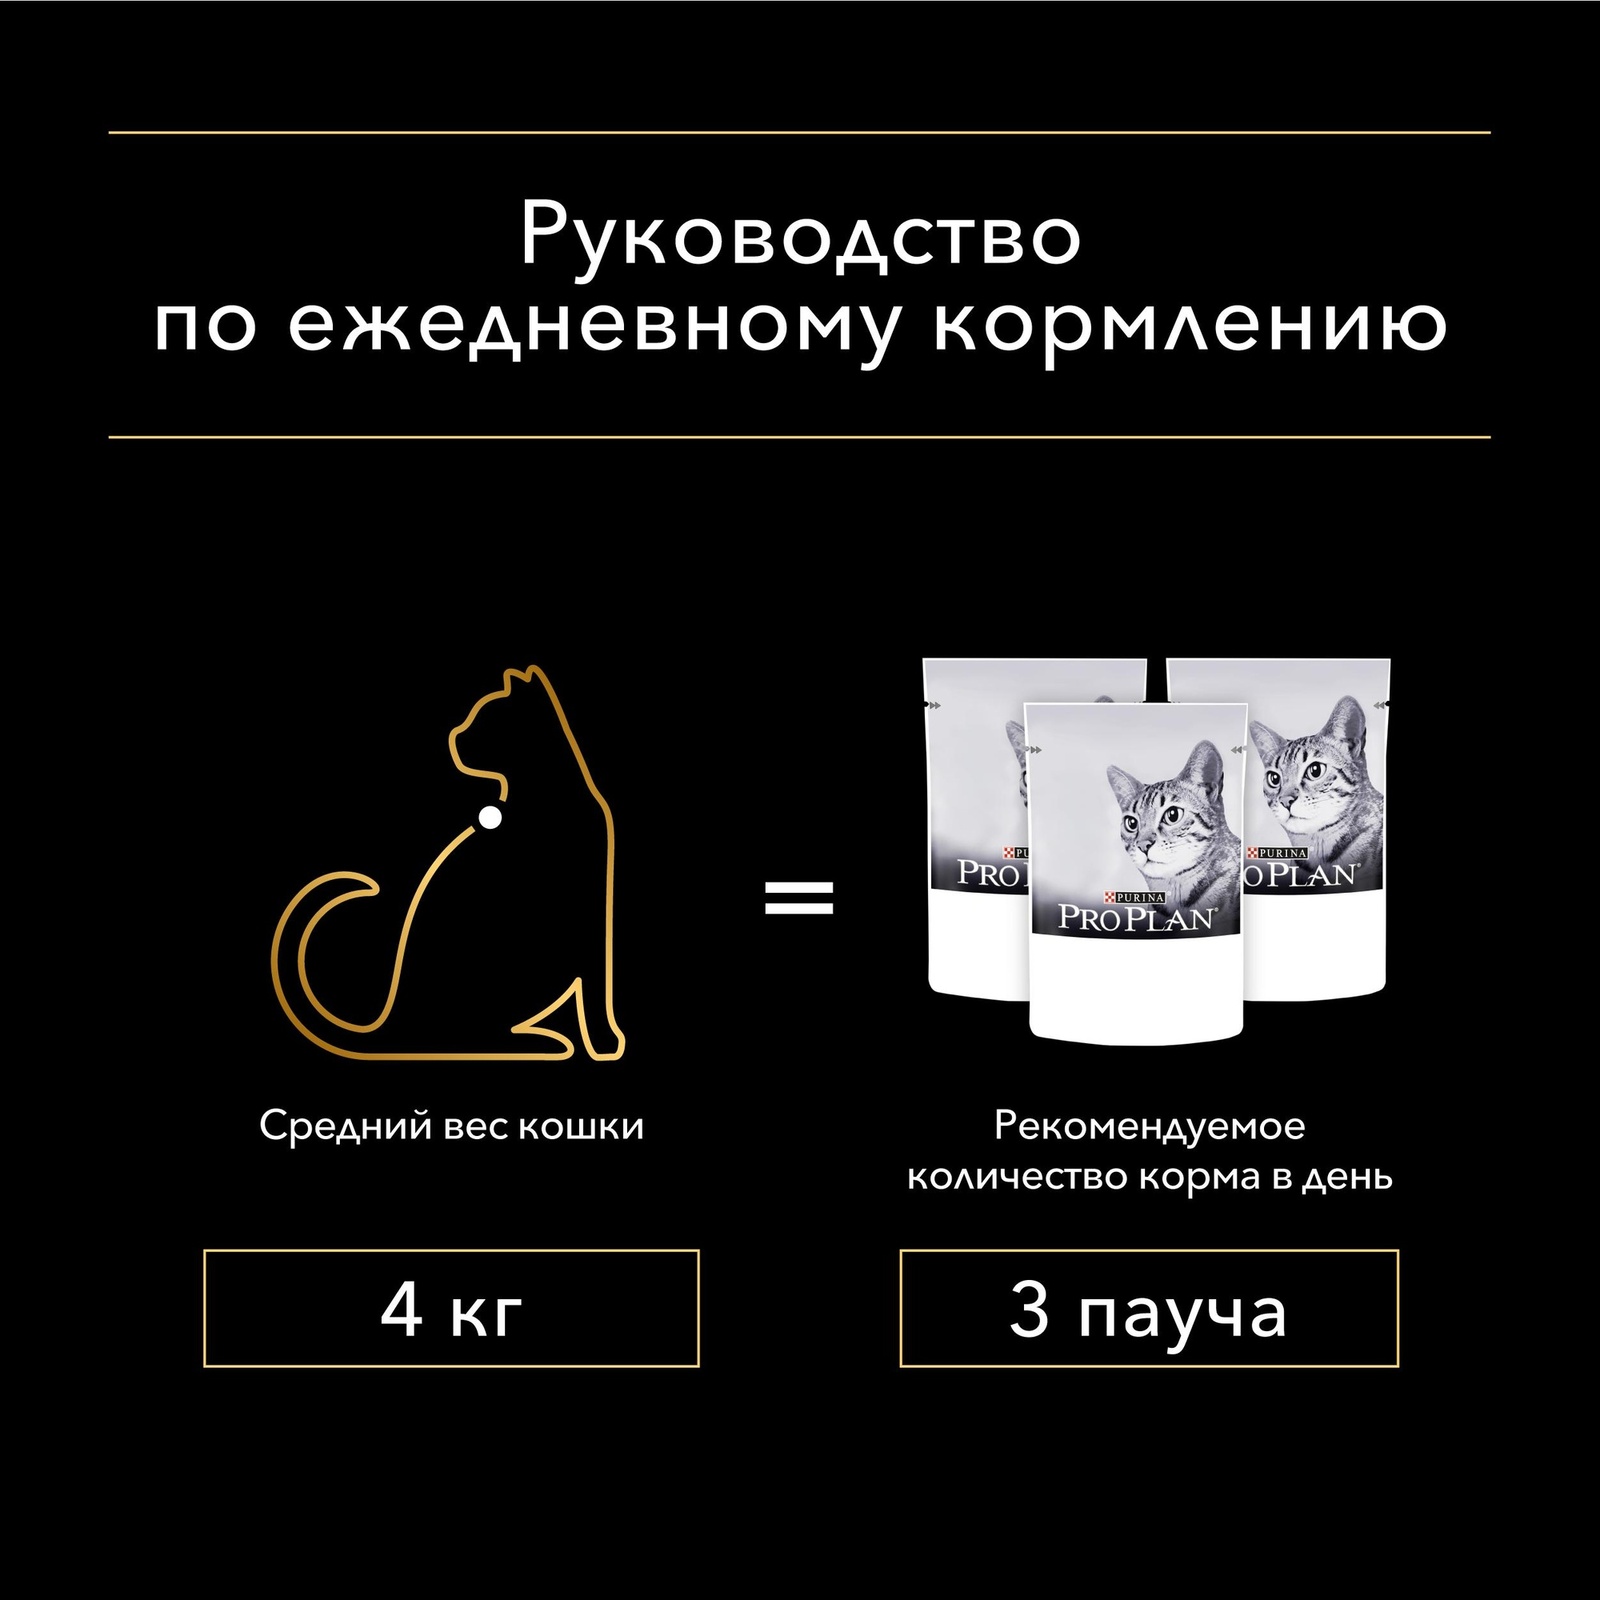 PRO PLAN (консервы) nutri Savour для взрослых кошек старше 7 лет, нежные кусочки с индейкой, в соусе (85 г) от Petshop